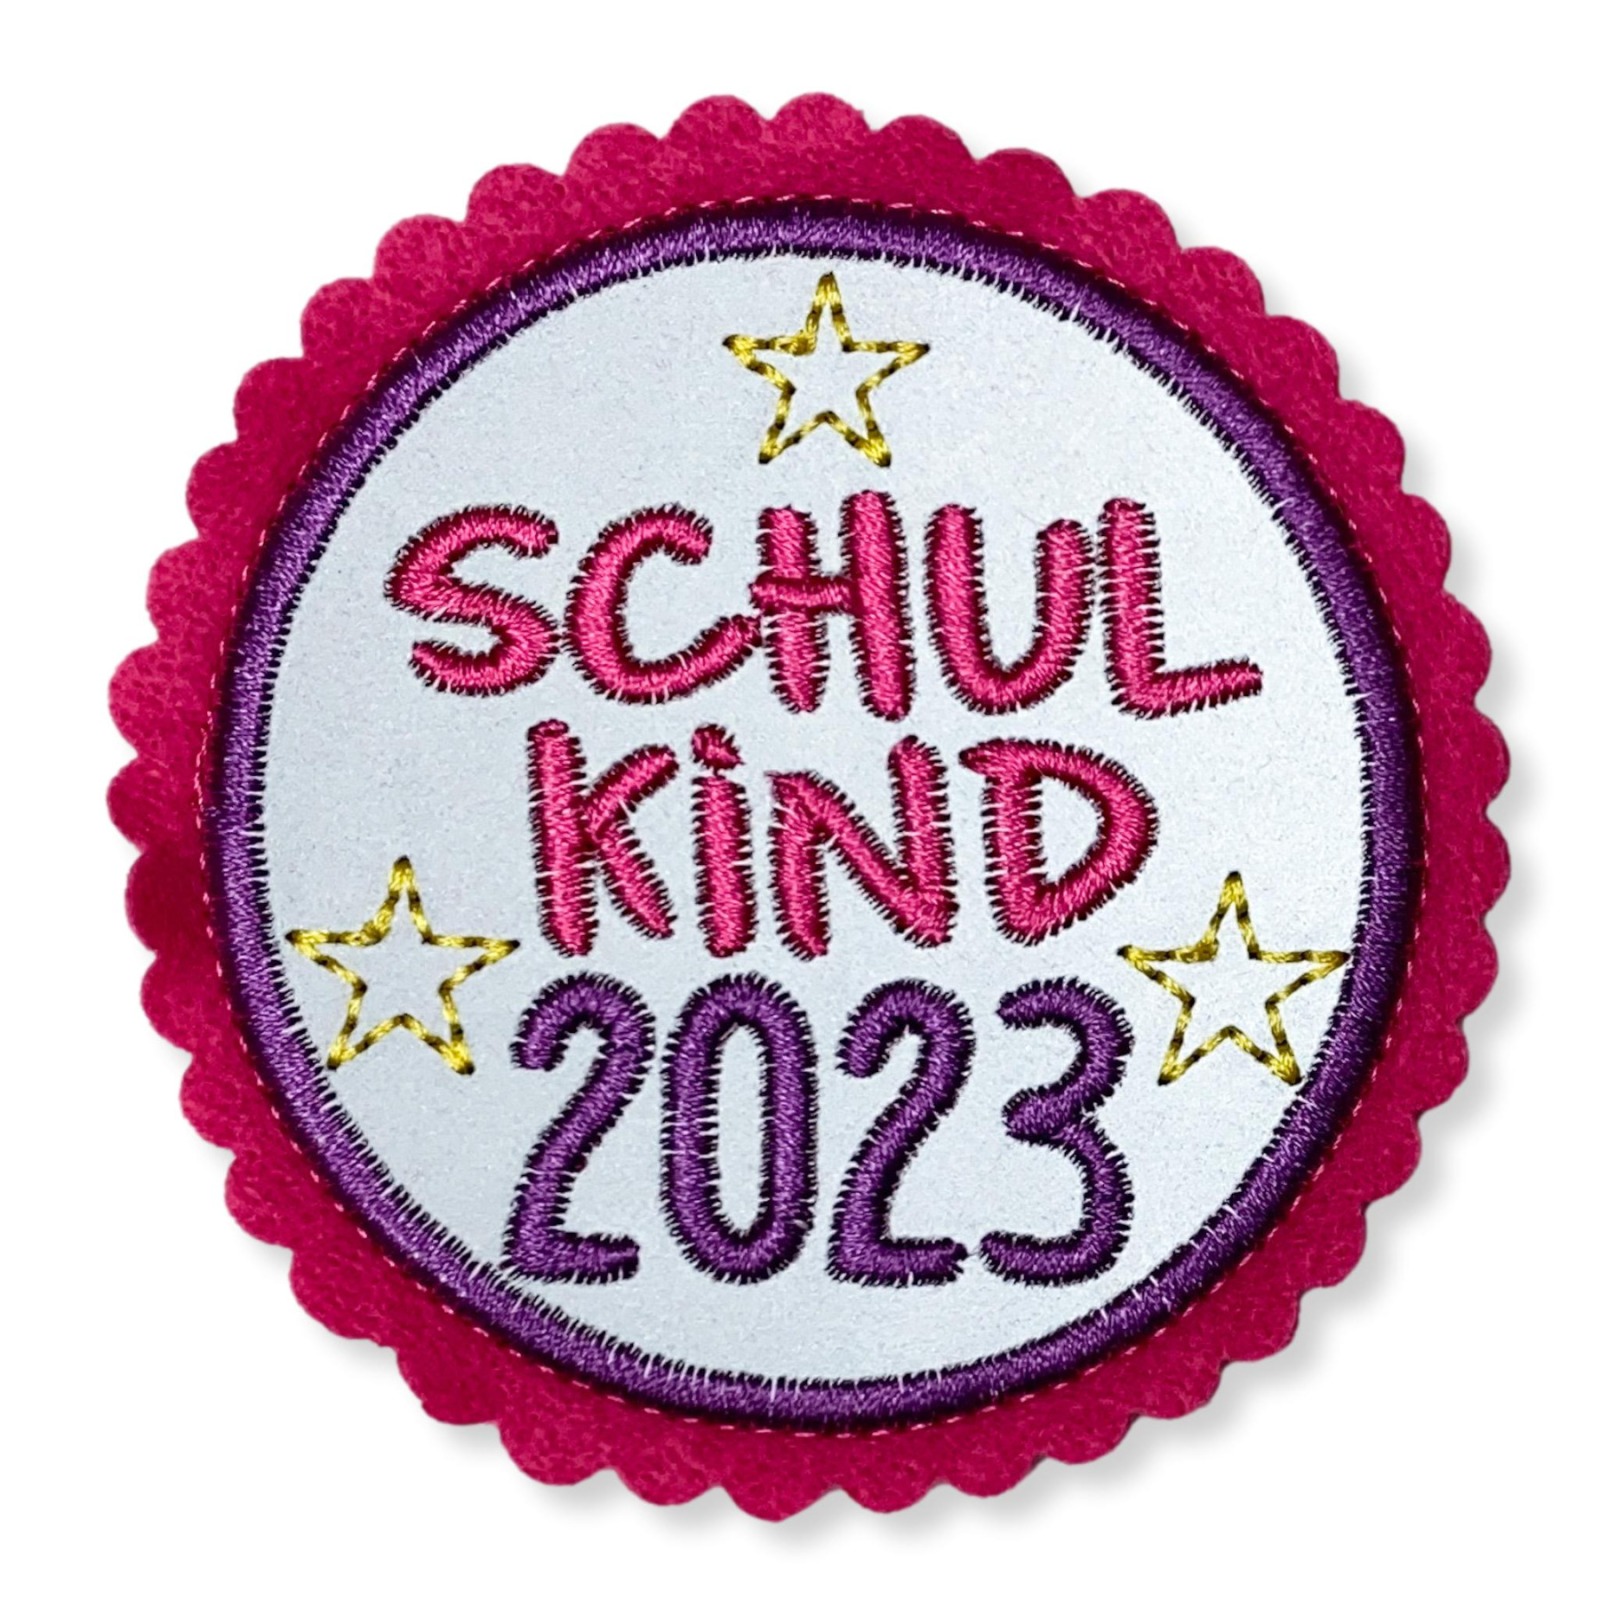 Klettie Schulkind 2023, 8cm Durchmesser, Reflektorstoff, pink, lila, Schulranzen mit Klett 2